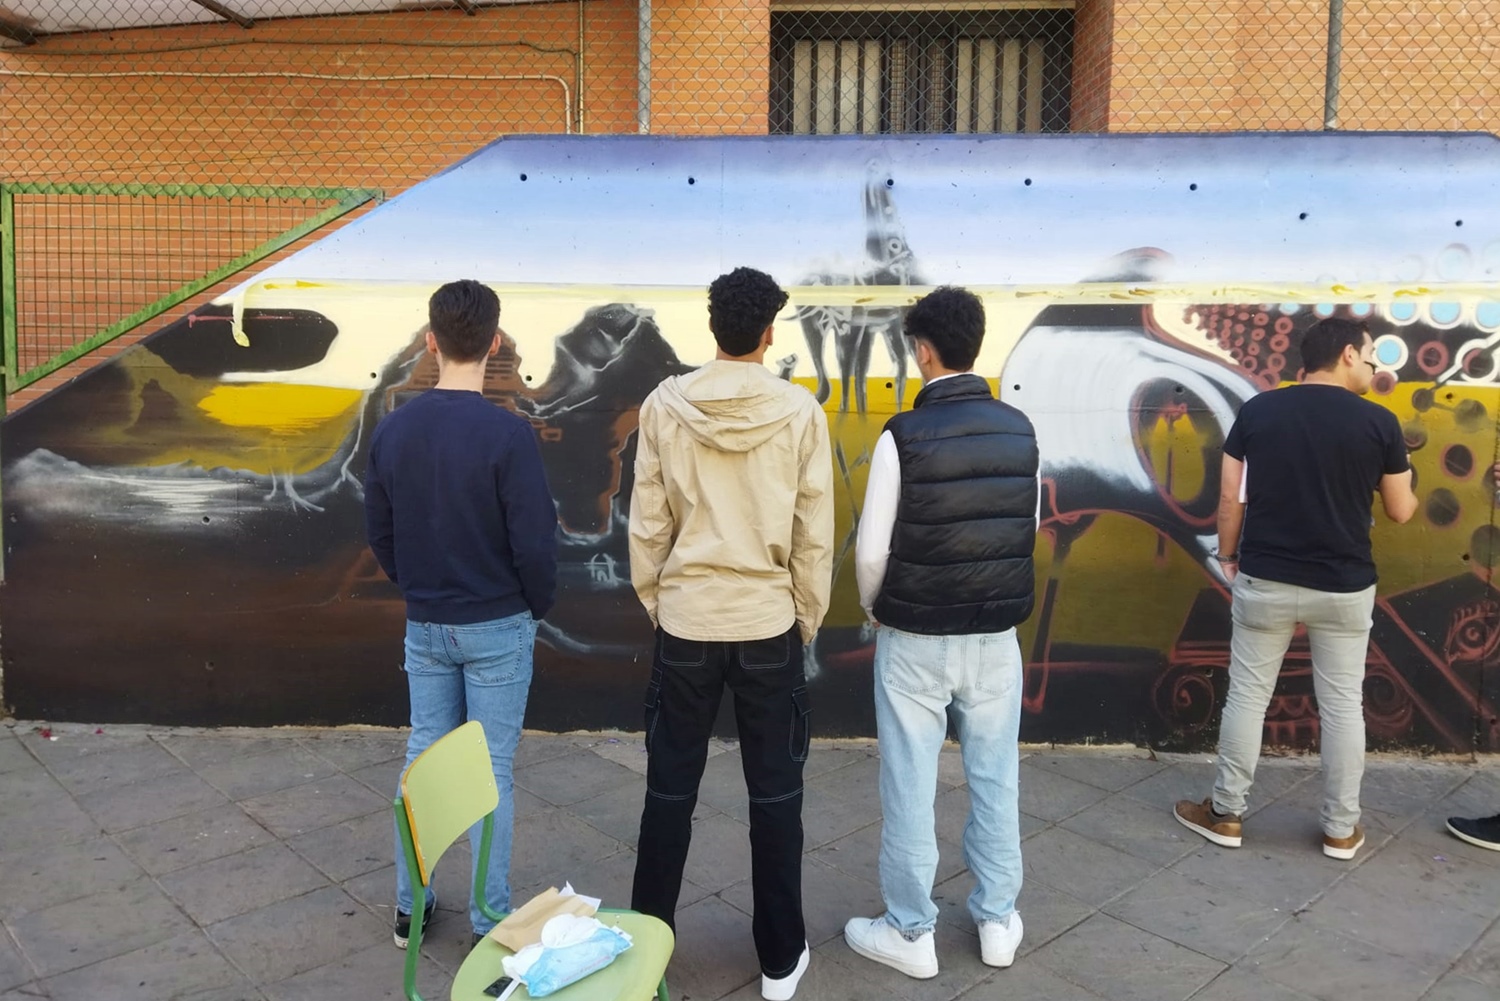 Los tres jóvenes observan uno de los murales sobre Dalí